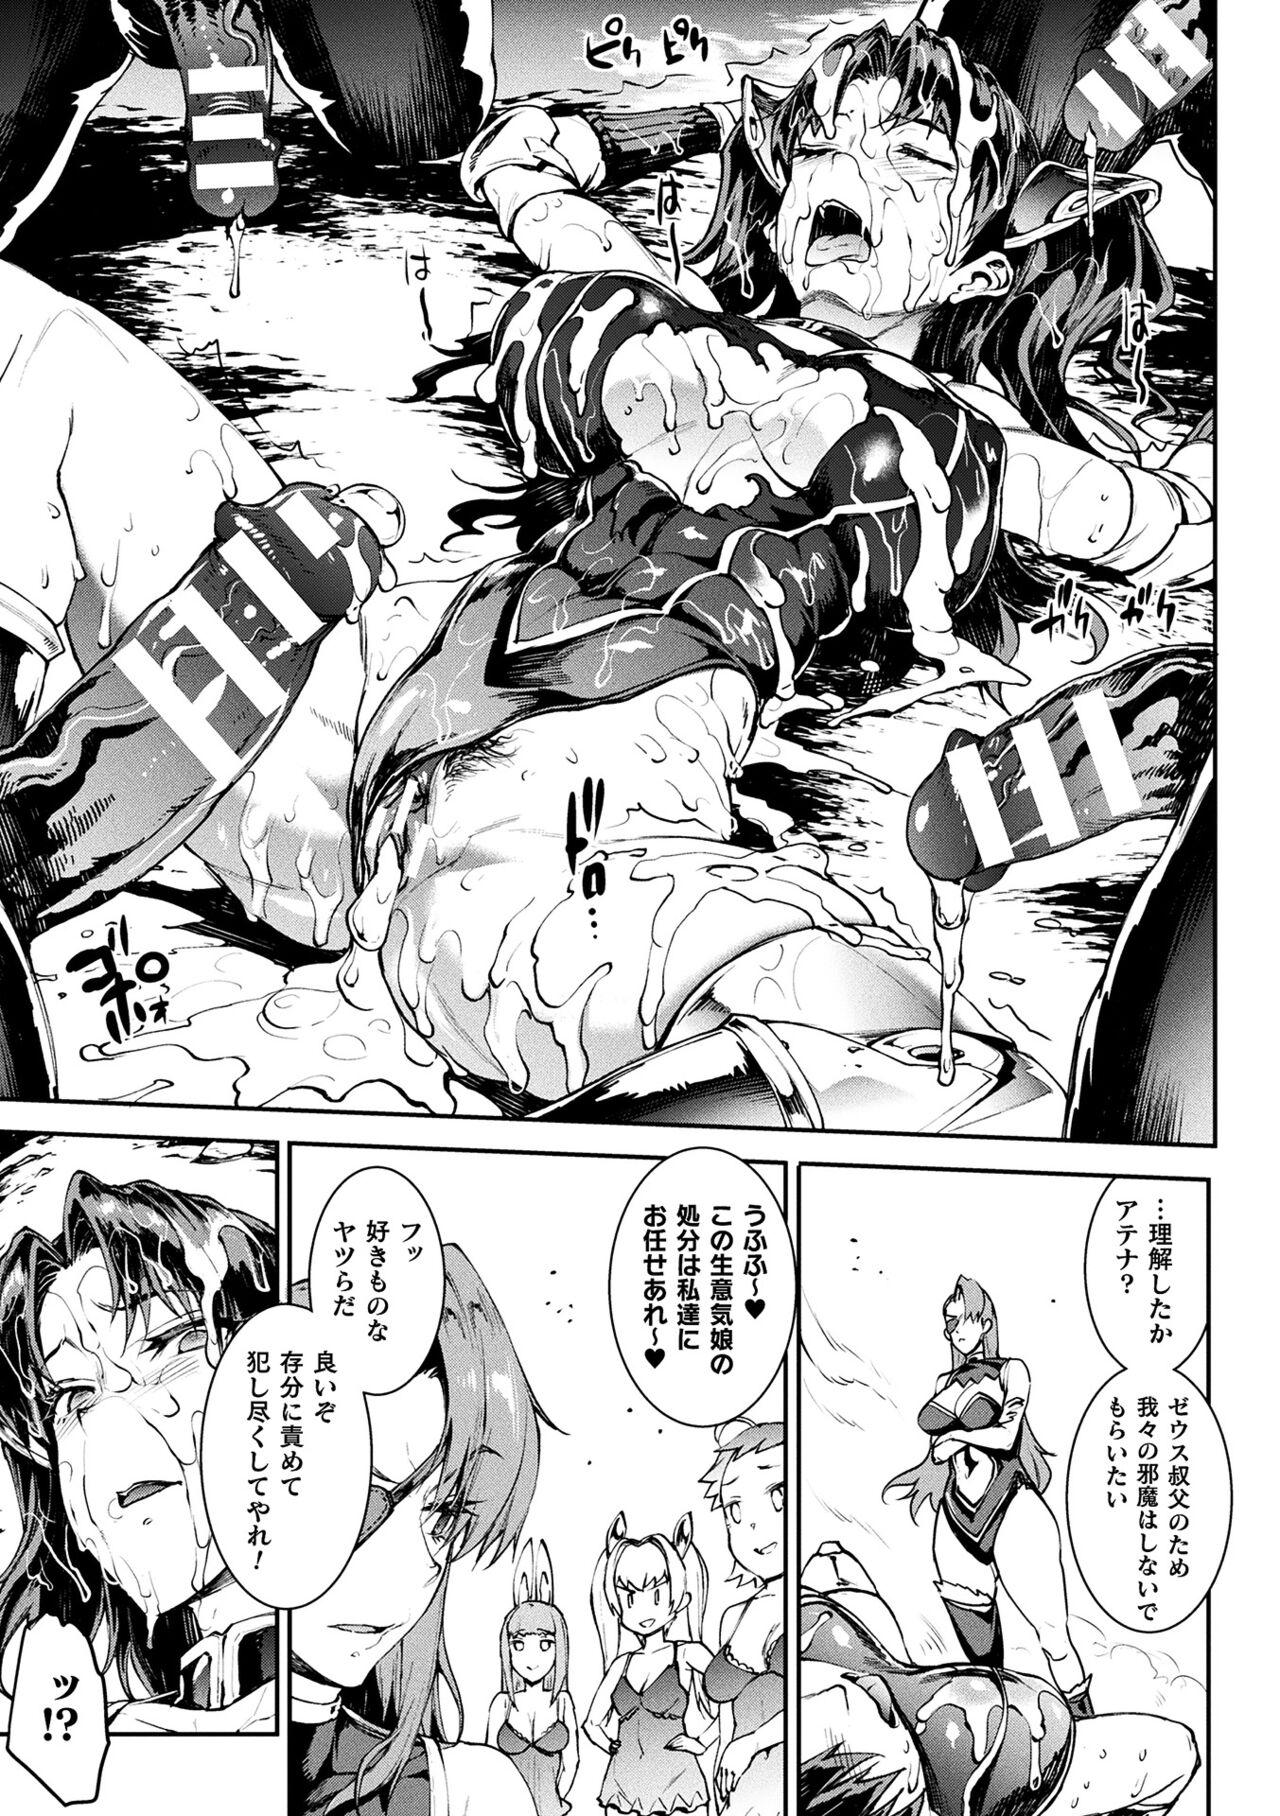 [Erect Sawaru] Raikou Shinki Igis Magia III -PANDRA saga 3rd ignition- 4 [Digital] 30